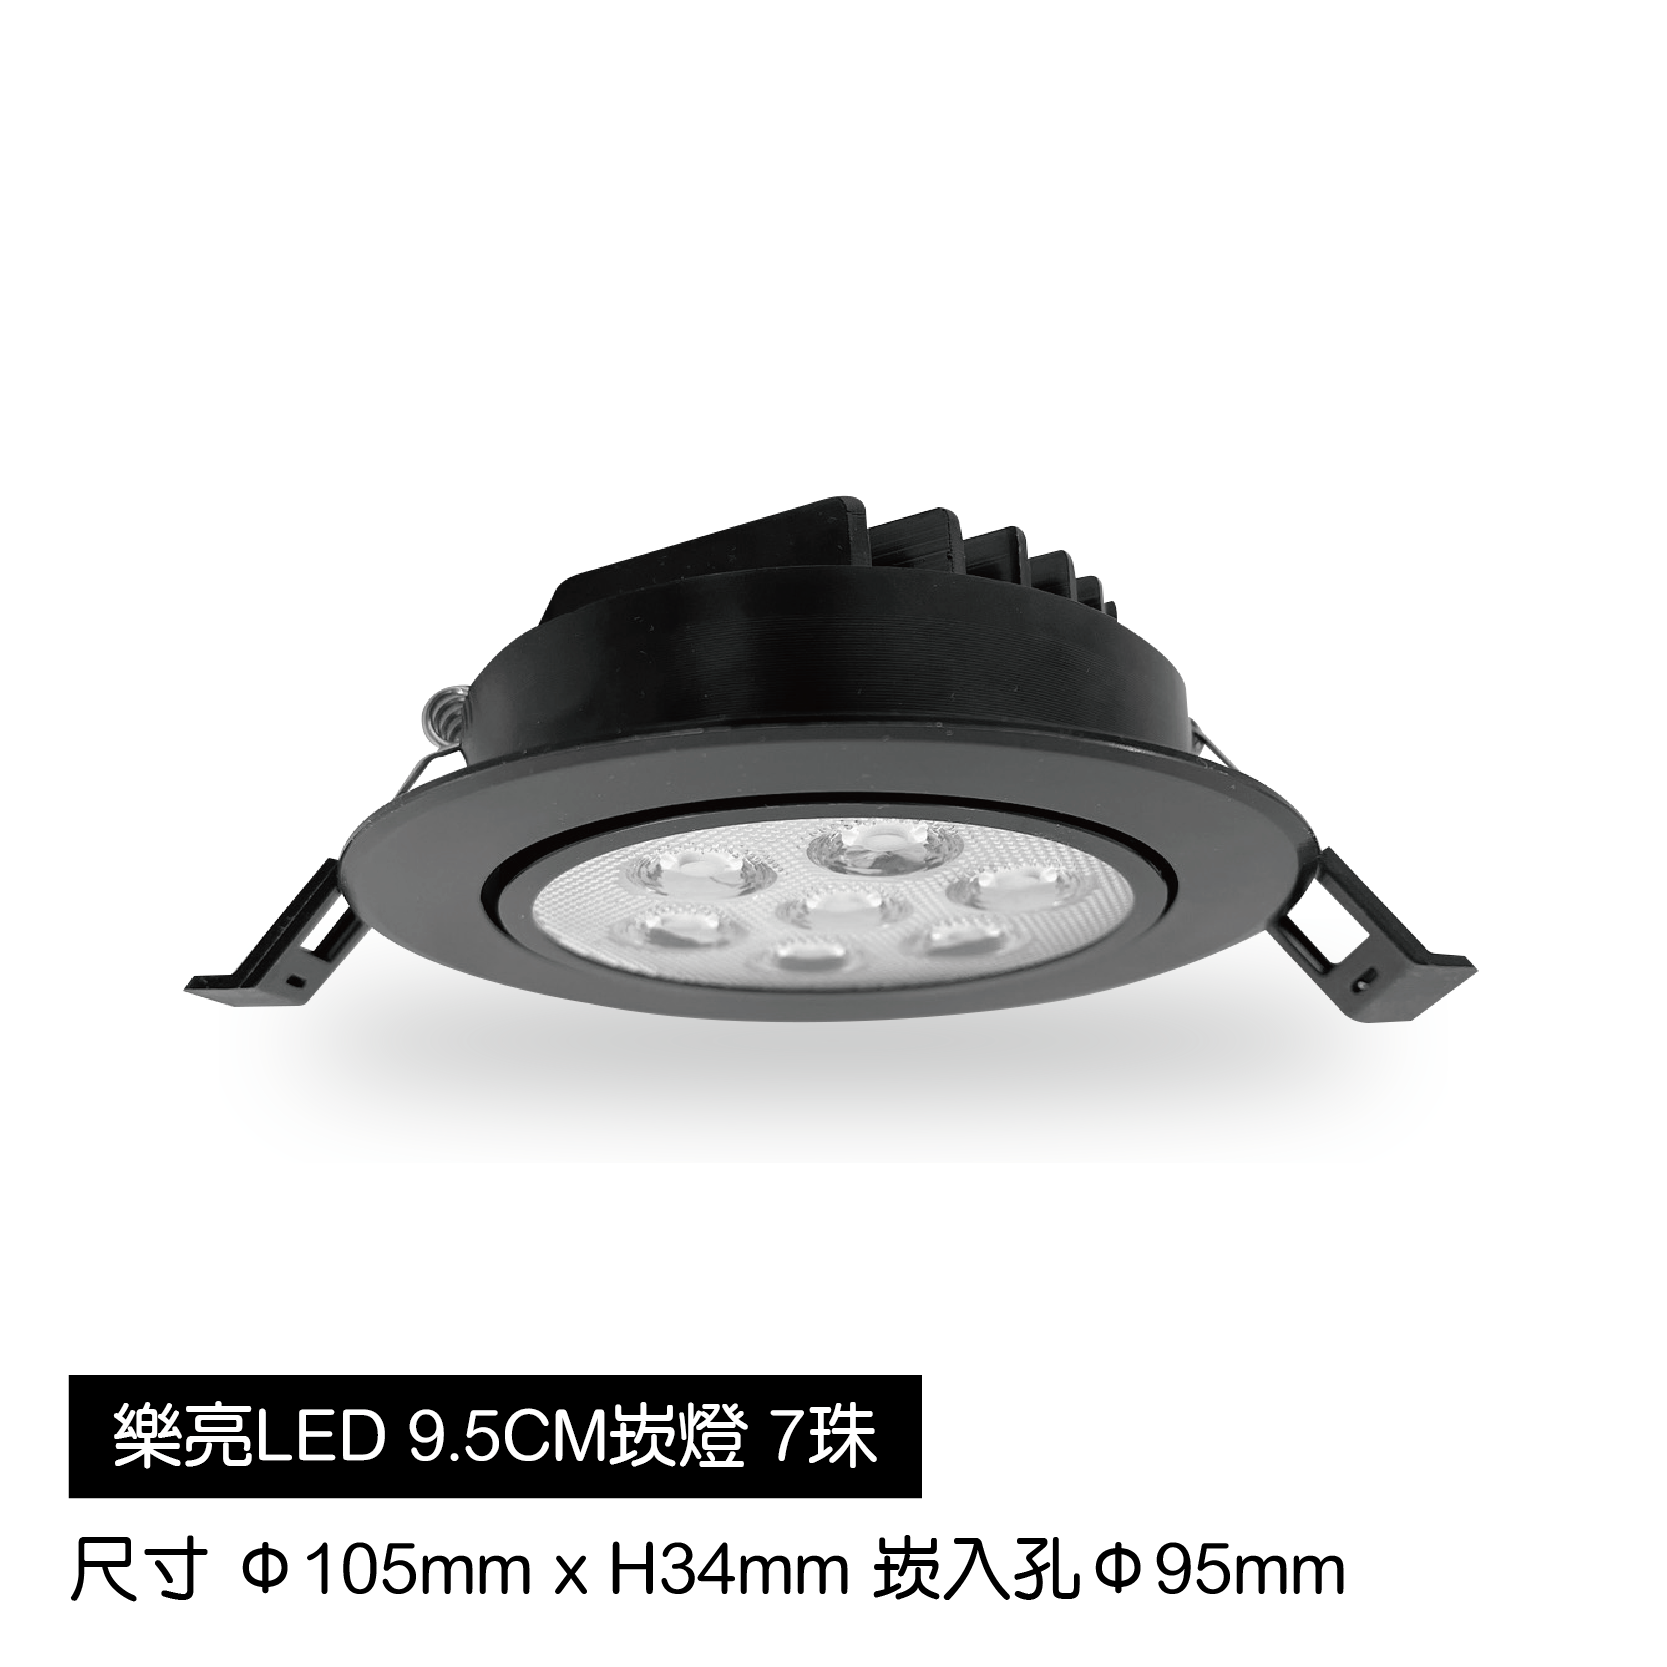 LED蜂巢9.5cm崁燈-7珠-黑殼